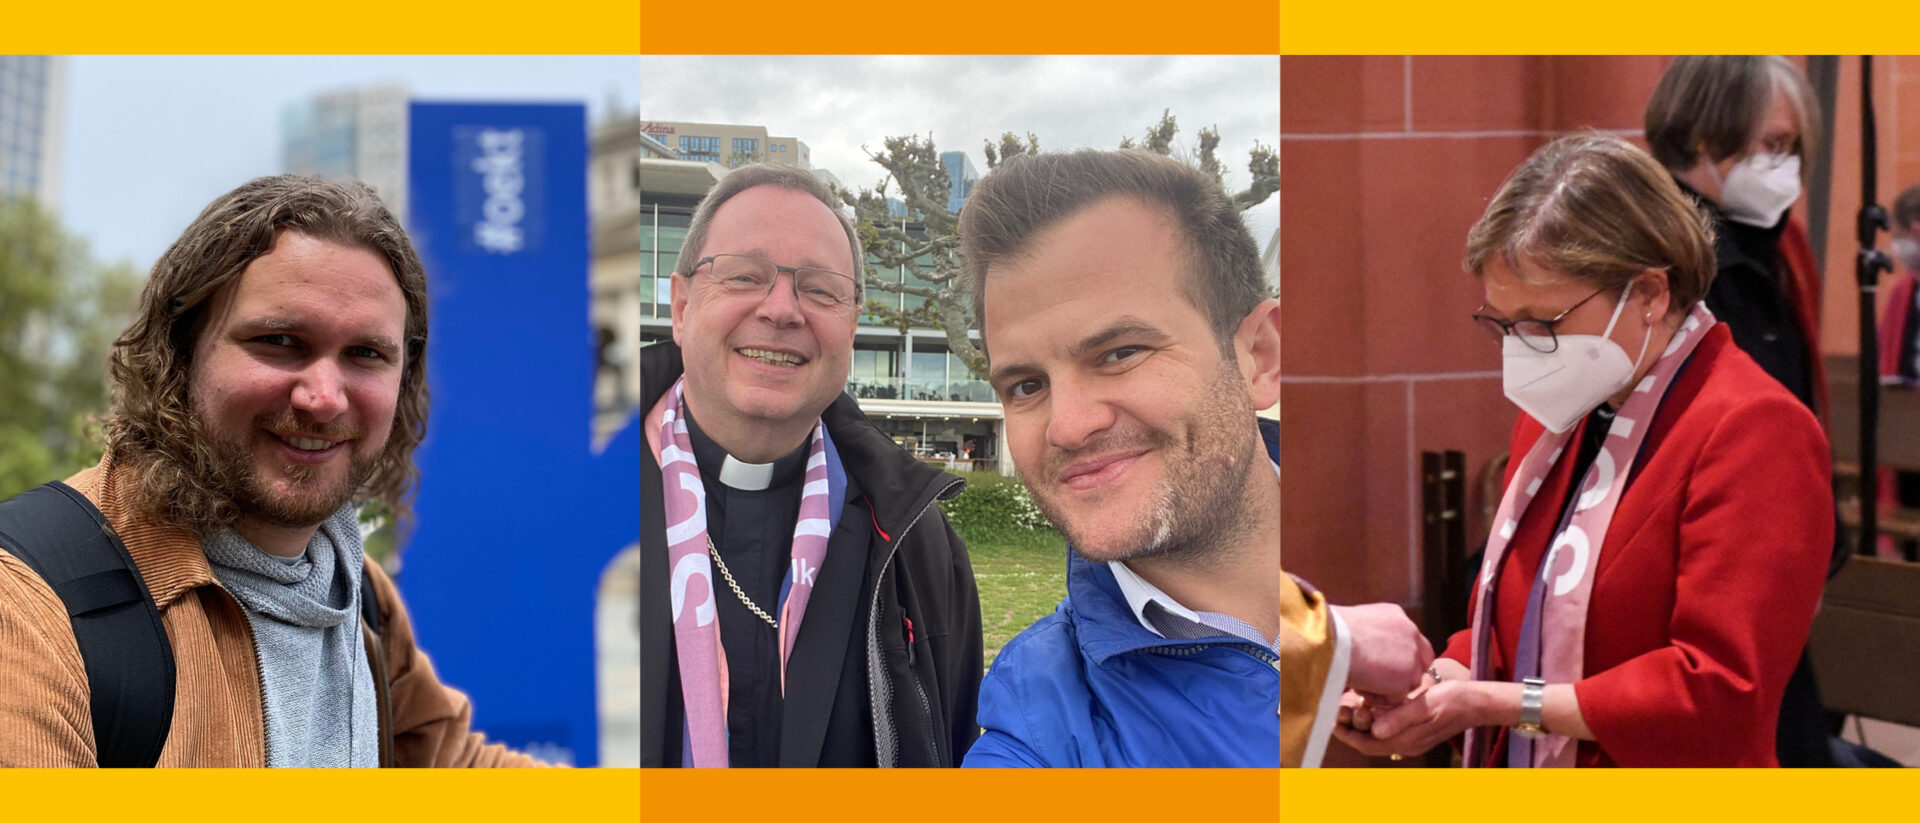 Ökumenischer Kirchentag: links Simon Brechbühler von "Kirche Urban" Zürich, Selfie mit Bischof Bätzing und Raphael Rauch, rechts BGH-Richterin Bettina Limperg.